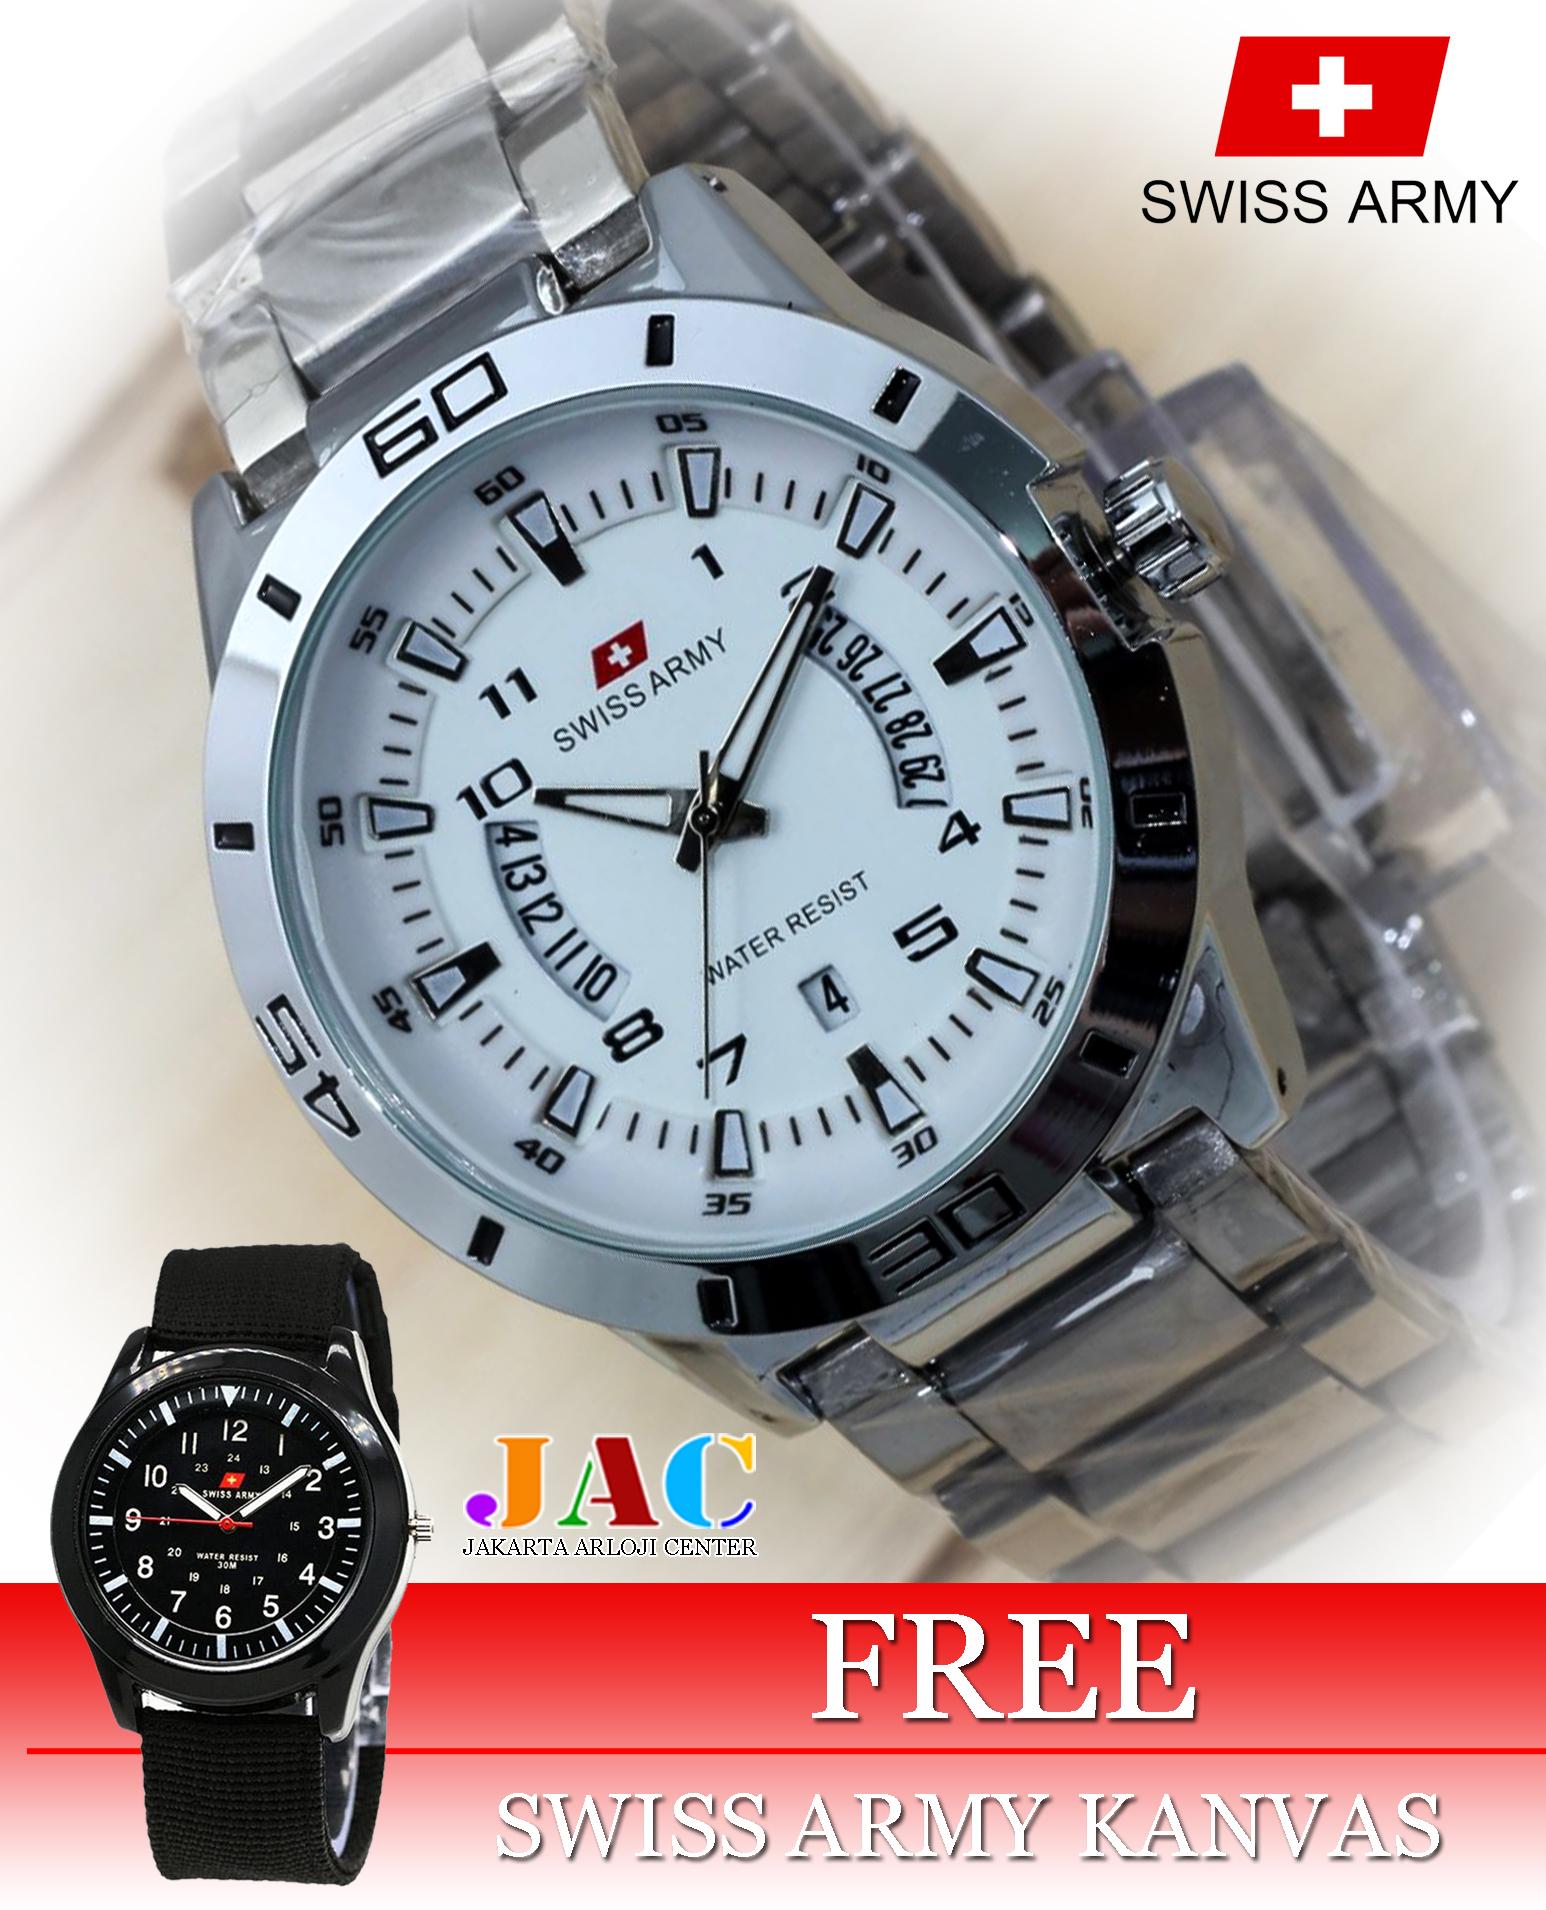 Jam Tangan Swiss Army Pria - Original - Stainless Steel - Tanggal Dan Hari Aktif - Formal Design - Bonus Jam Tangan Kanvas 